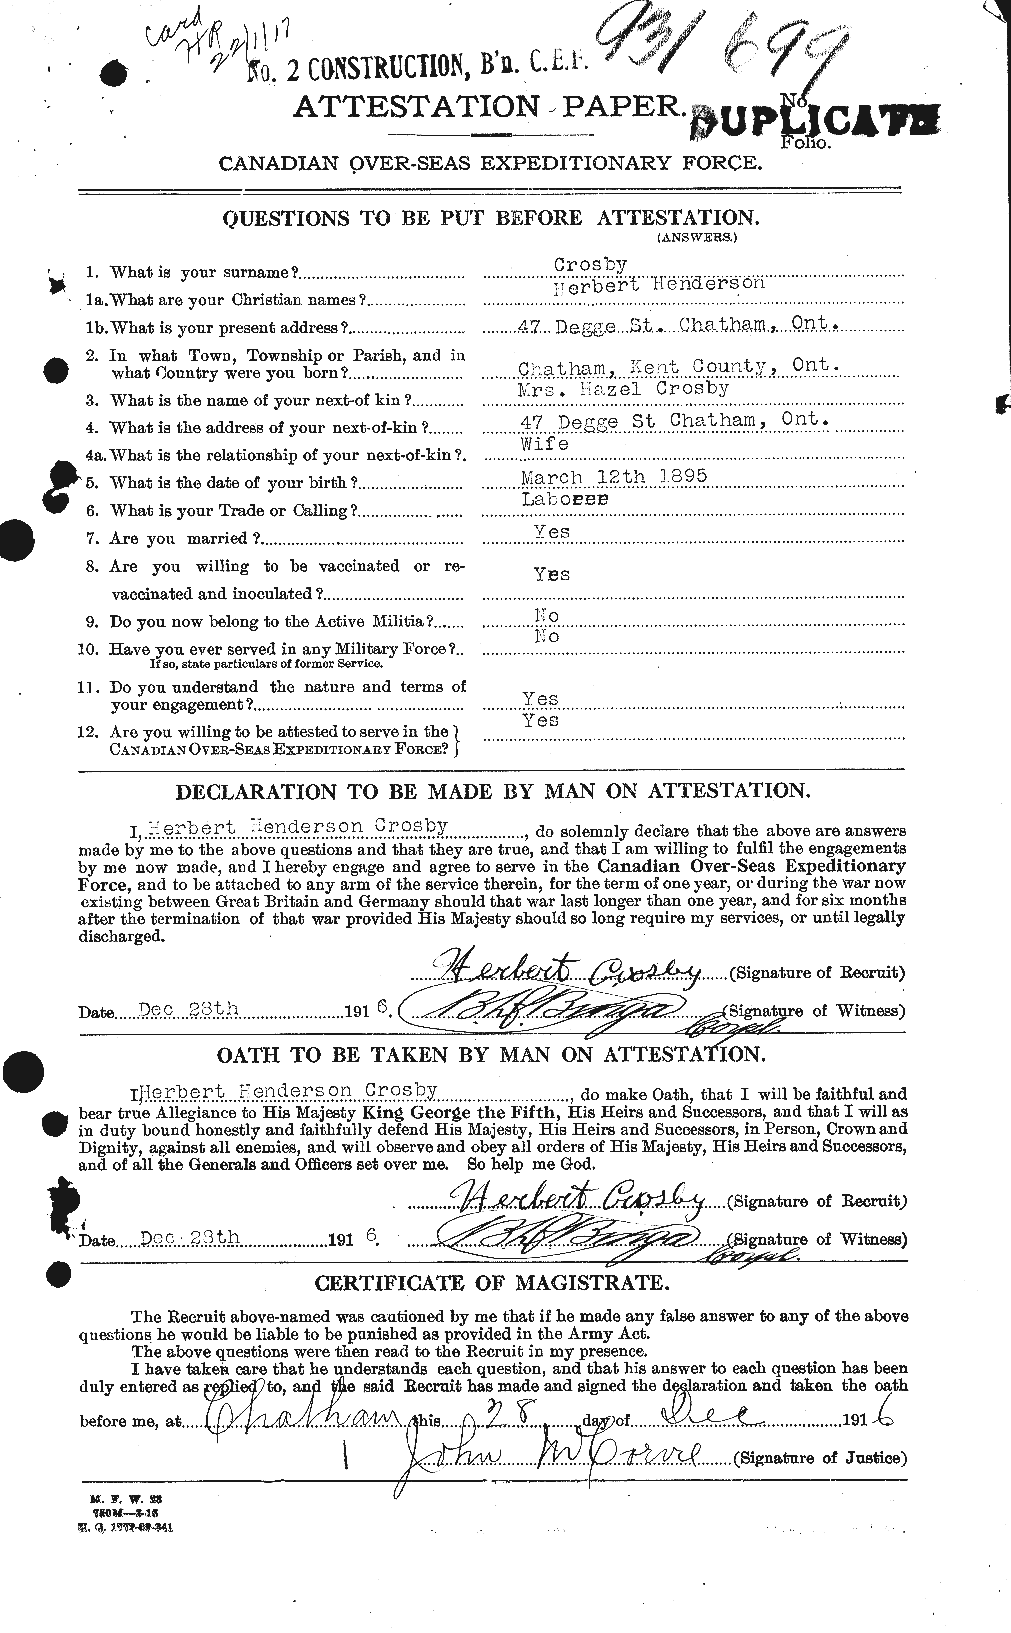 Dossiers du Personnel de la Première Guerre mondiale - CEC 066092a